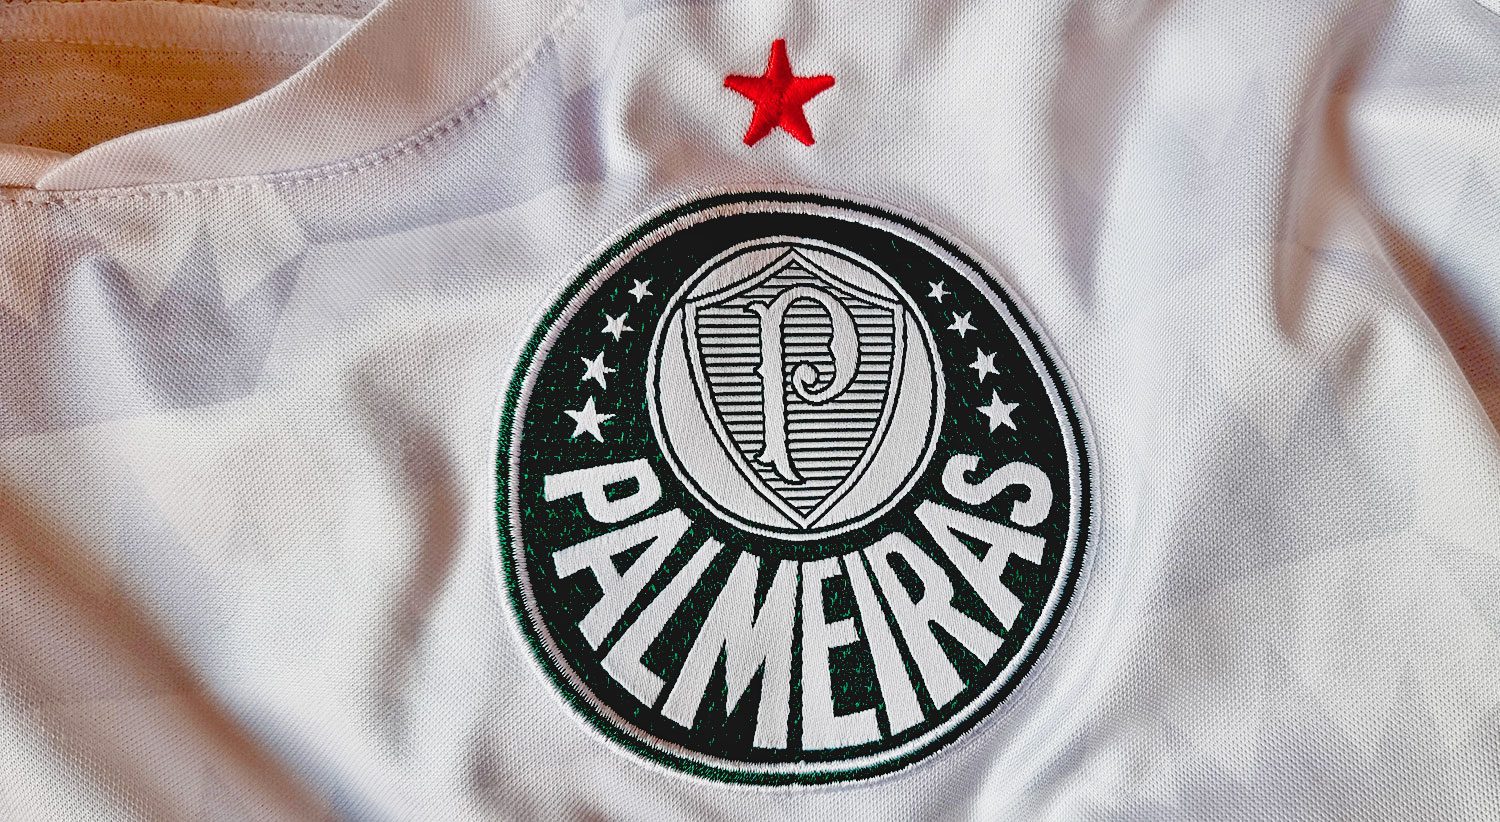 Palmeiras divulga camisa adequada para Mundial de Clubes da FIFA 2021 » MDF